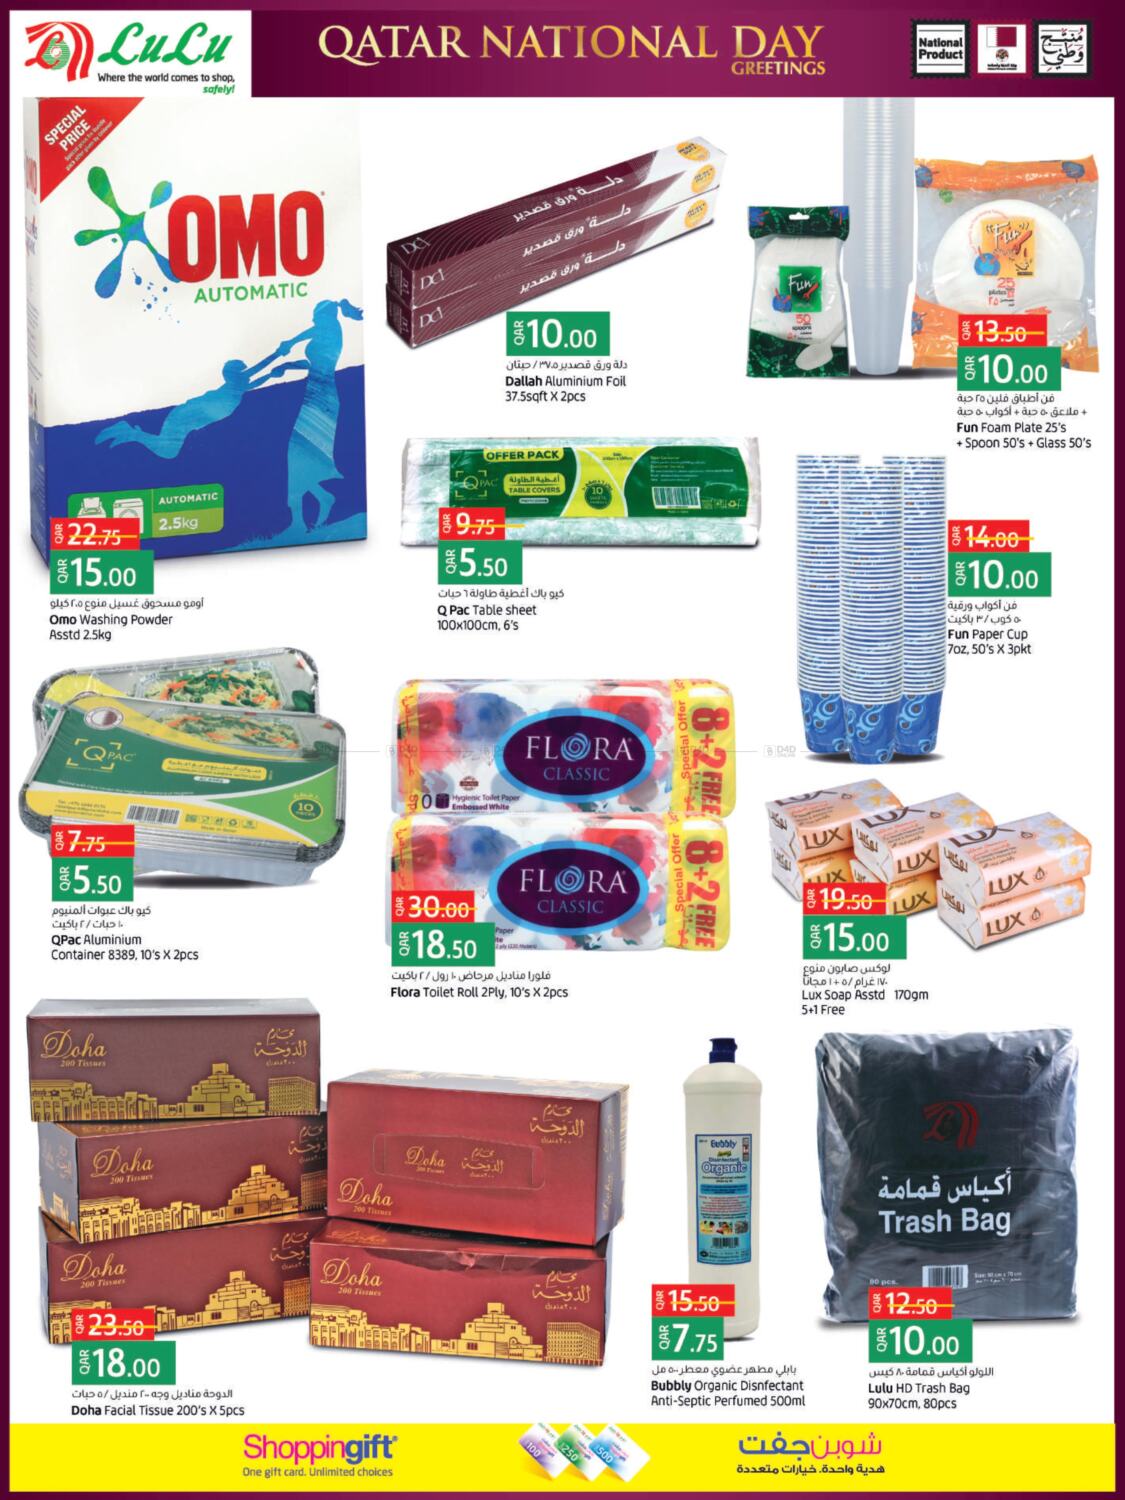 LuLu Hypermarket Qatar National Day Special Offers in Qatar Al Khor